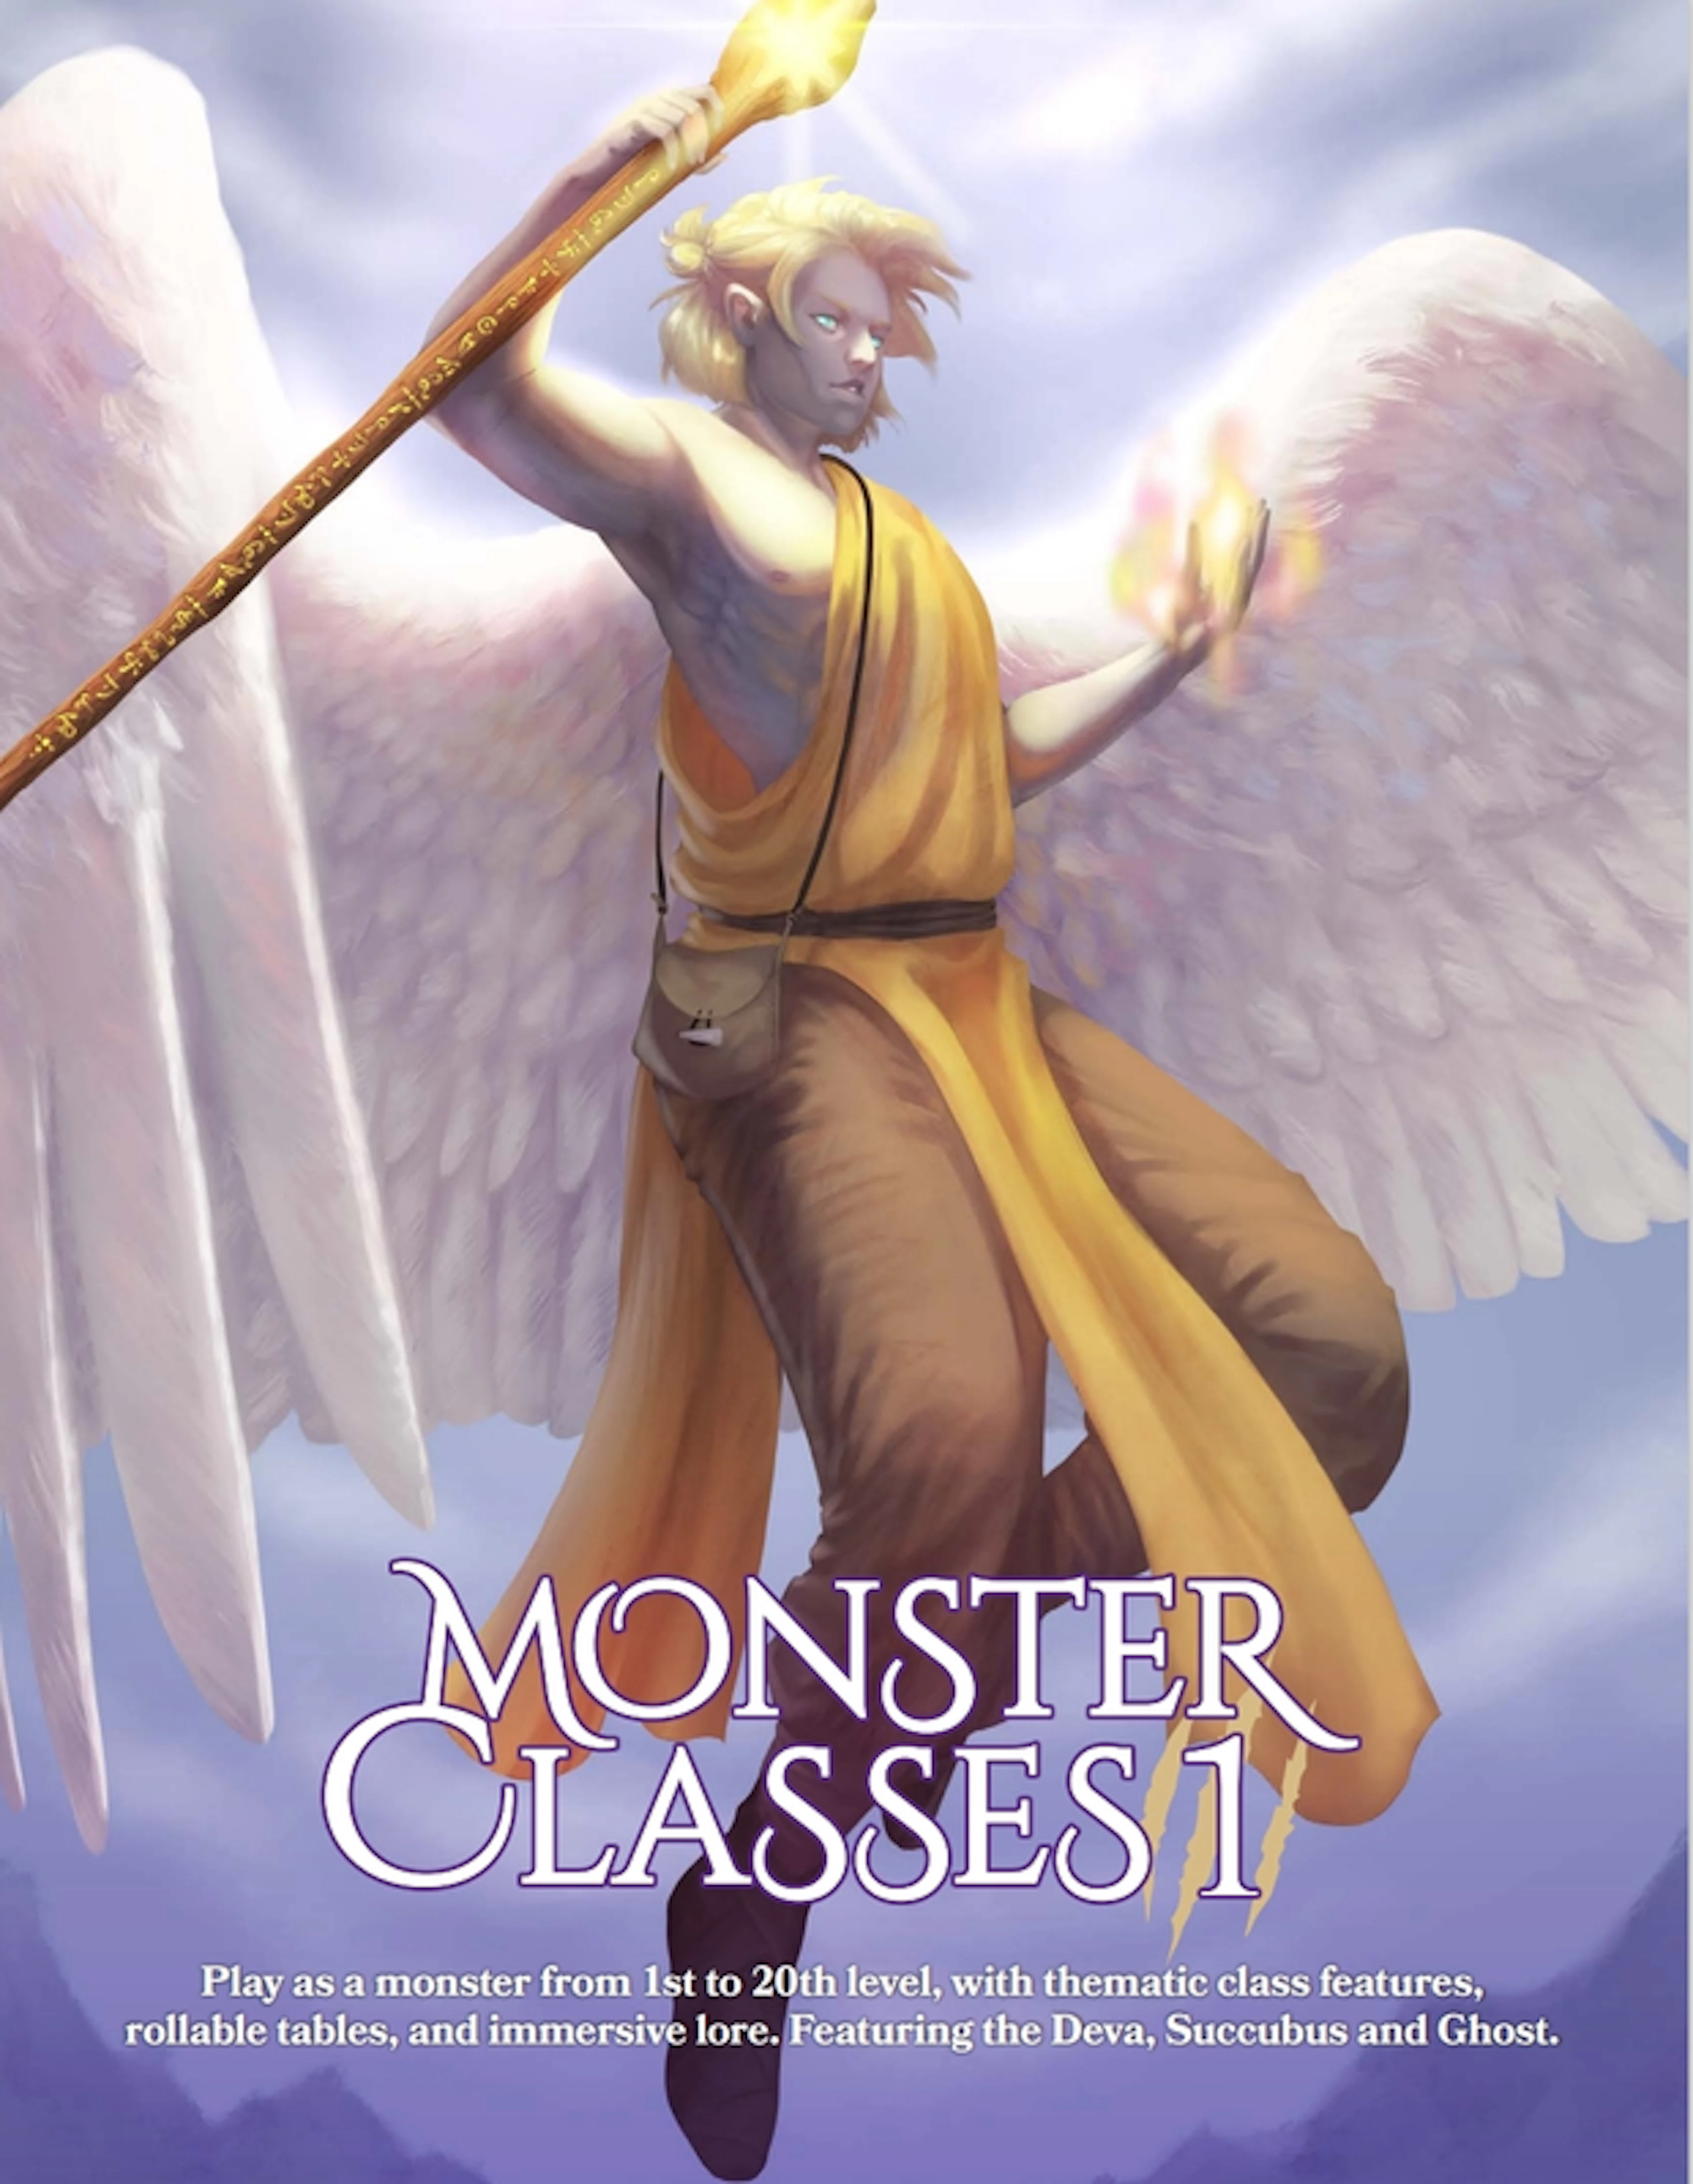 MrRhexx's Monster Classes I